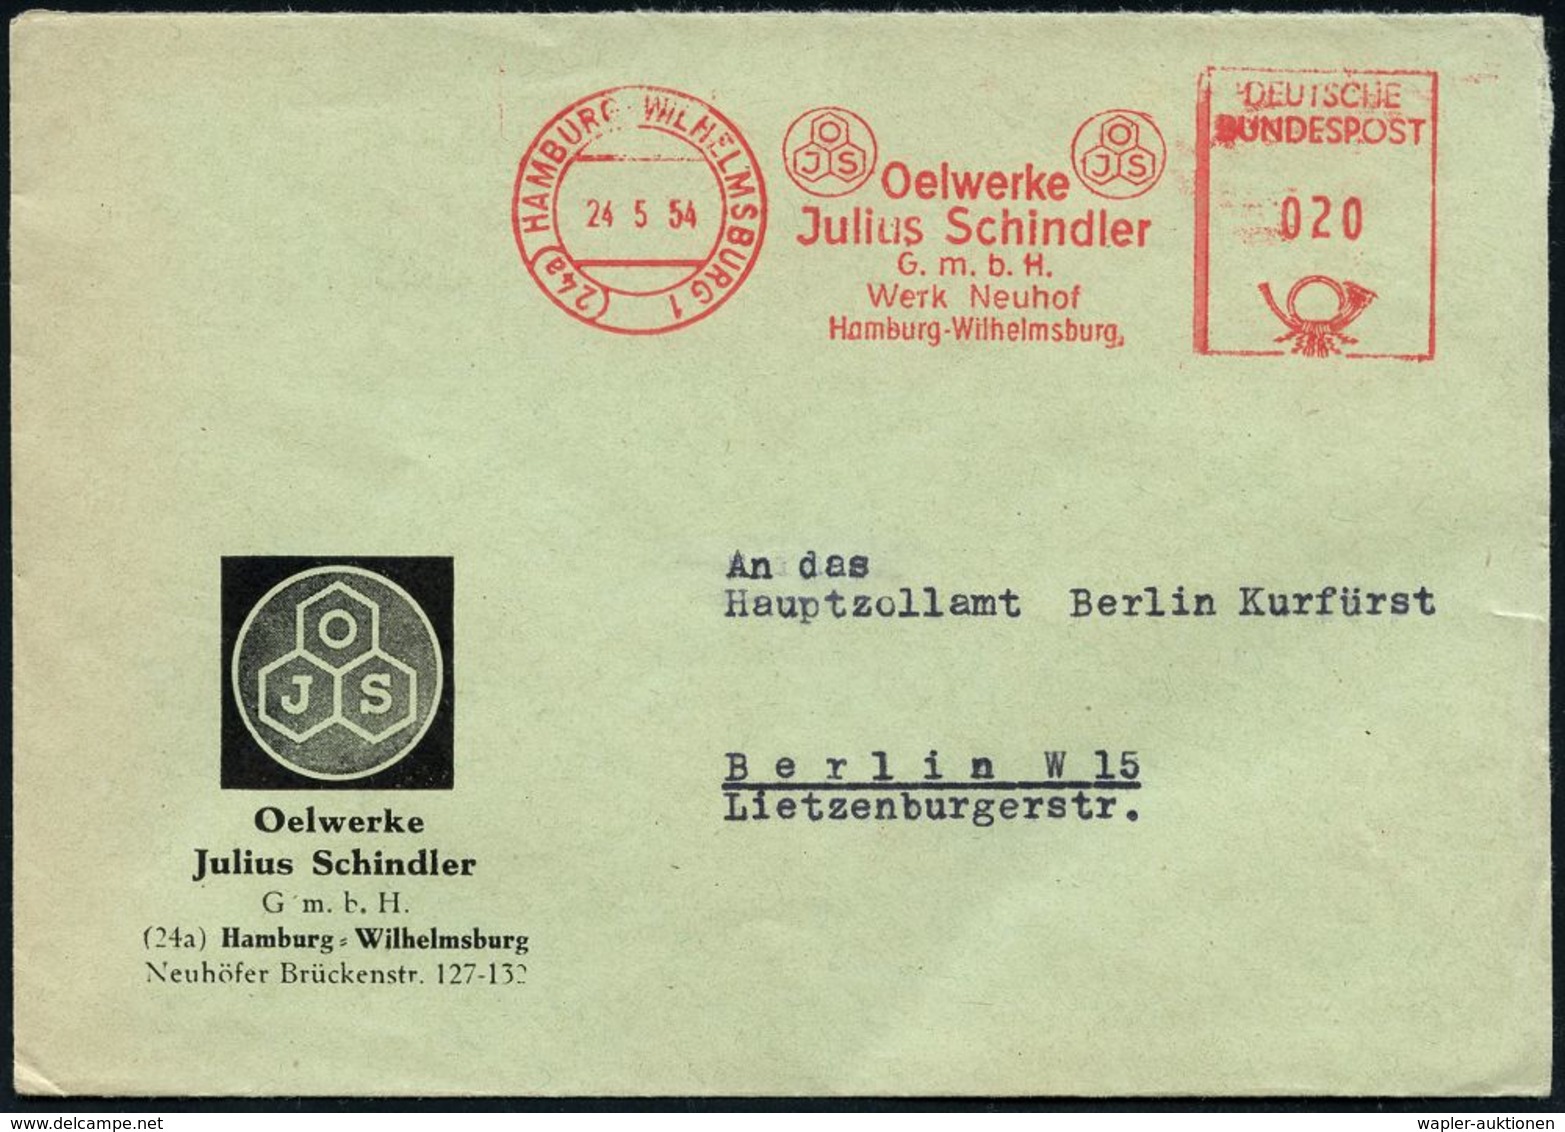 ERDÖL / PROSPEKTIERUNG & GEWINNUNG : (24a) HAMBURG-WILHELMSBURG 1/ OJS/ Oelwerke/ Julius Schindler.. 1954 (24.5.) AFS (M - Pétrole